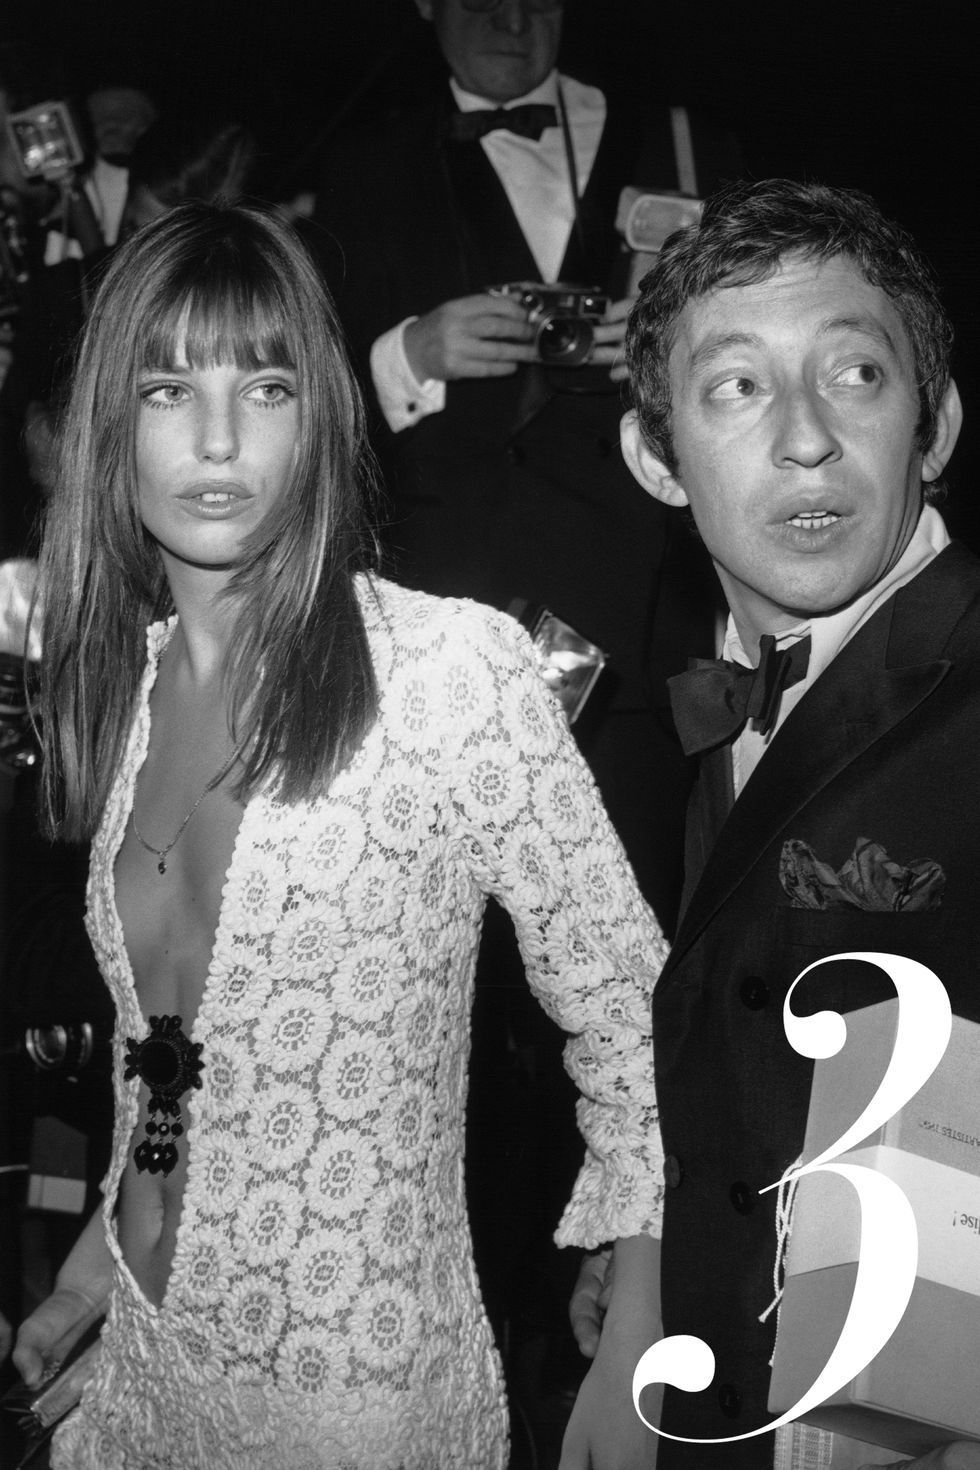 04/25/1969. Serge GAINSBOURG and Jane BIRKIN arriving at the Artists Union's Gala, Paris.&#xA;Le 25 avril 1969, Serge GAINSBOURG et Jane BIRKIN arrivent au Gala de l'Union des Artistes à Paris.